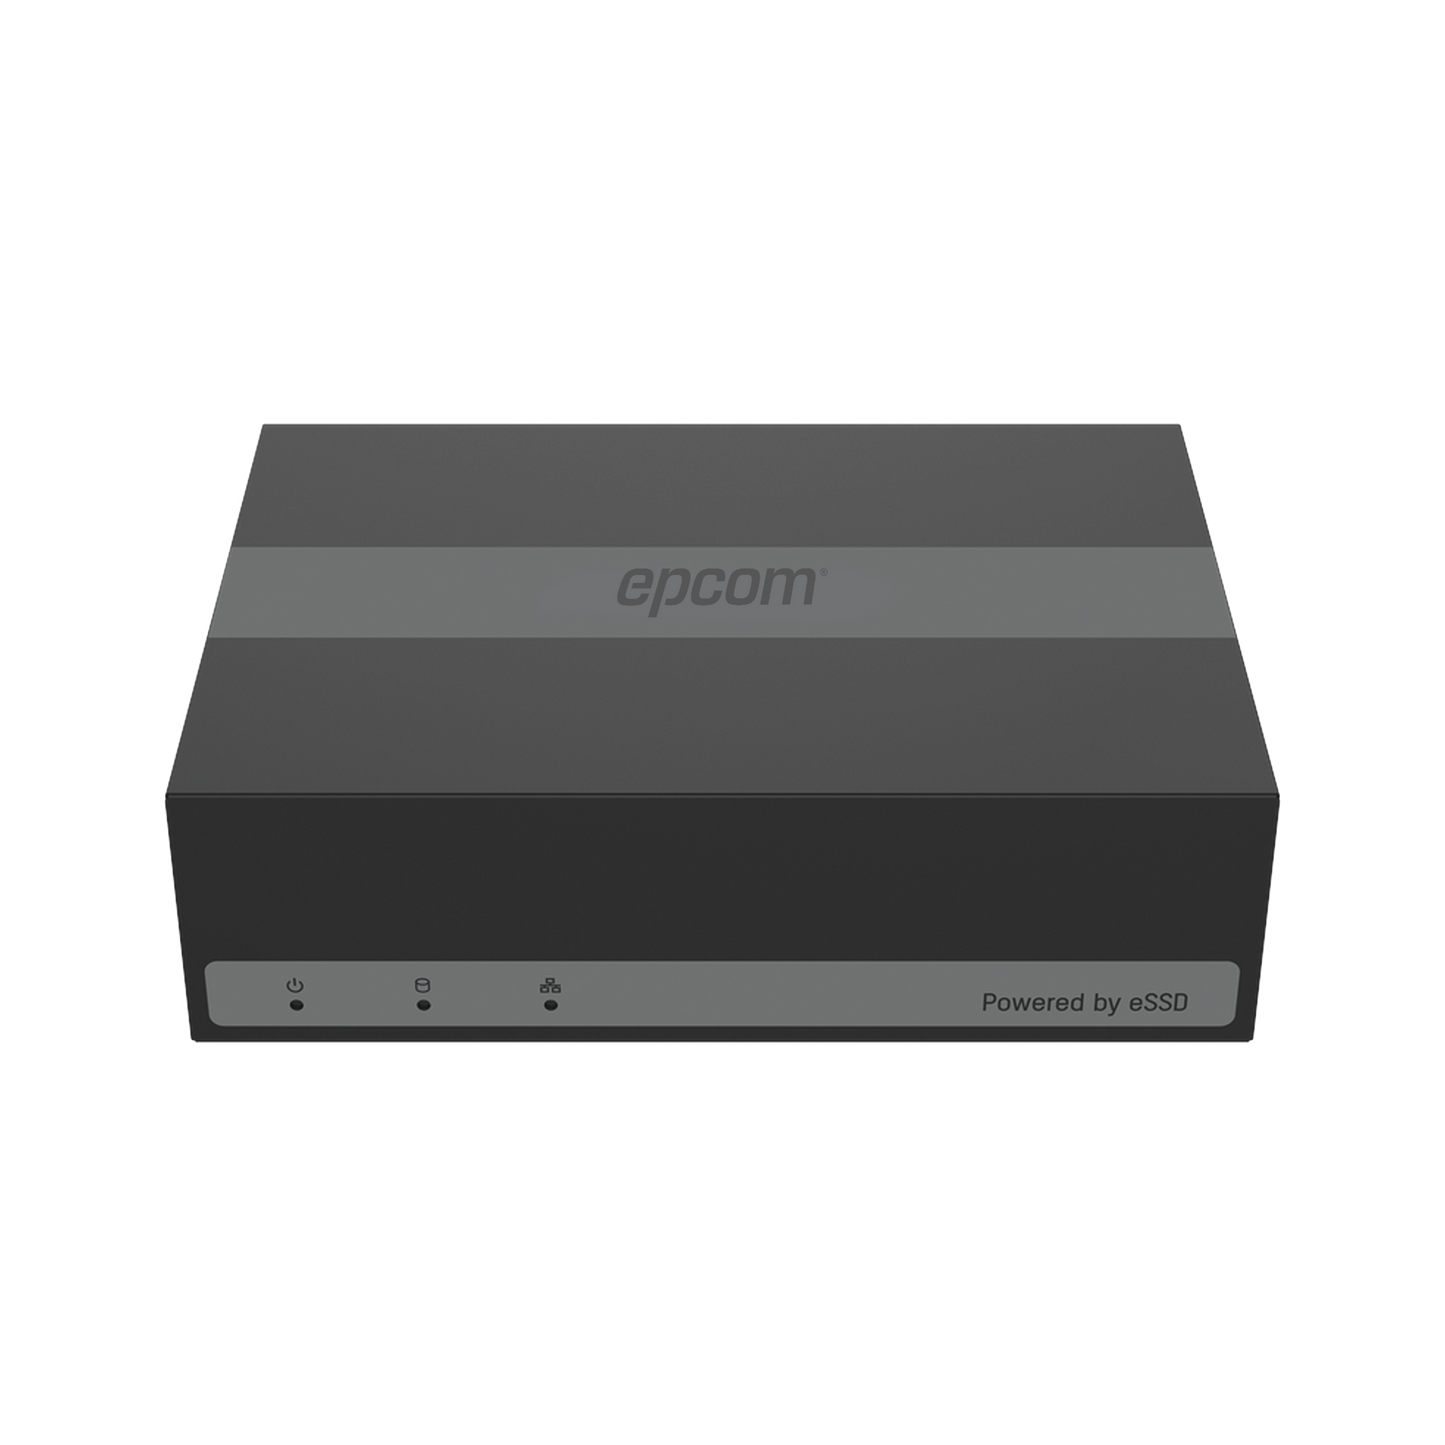 DVR 8 Canales TurboHD + 2 Canales IP / 2 Megapixel (1080p) Lite / Acusense Lite (Evita Falsas Alarmas) / Unidad de Estado Solido Incluido (eSSD) de 480 GB / H.265+ / Diseño Ultra Compacto / Extra Silencioso